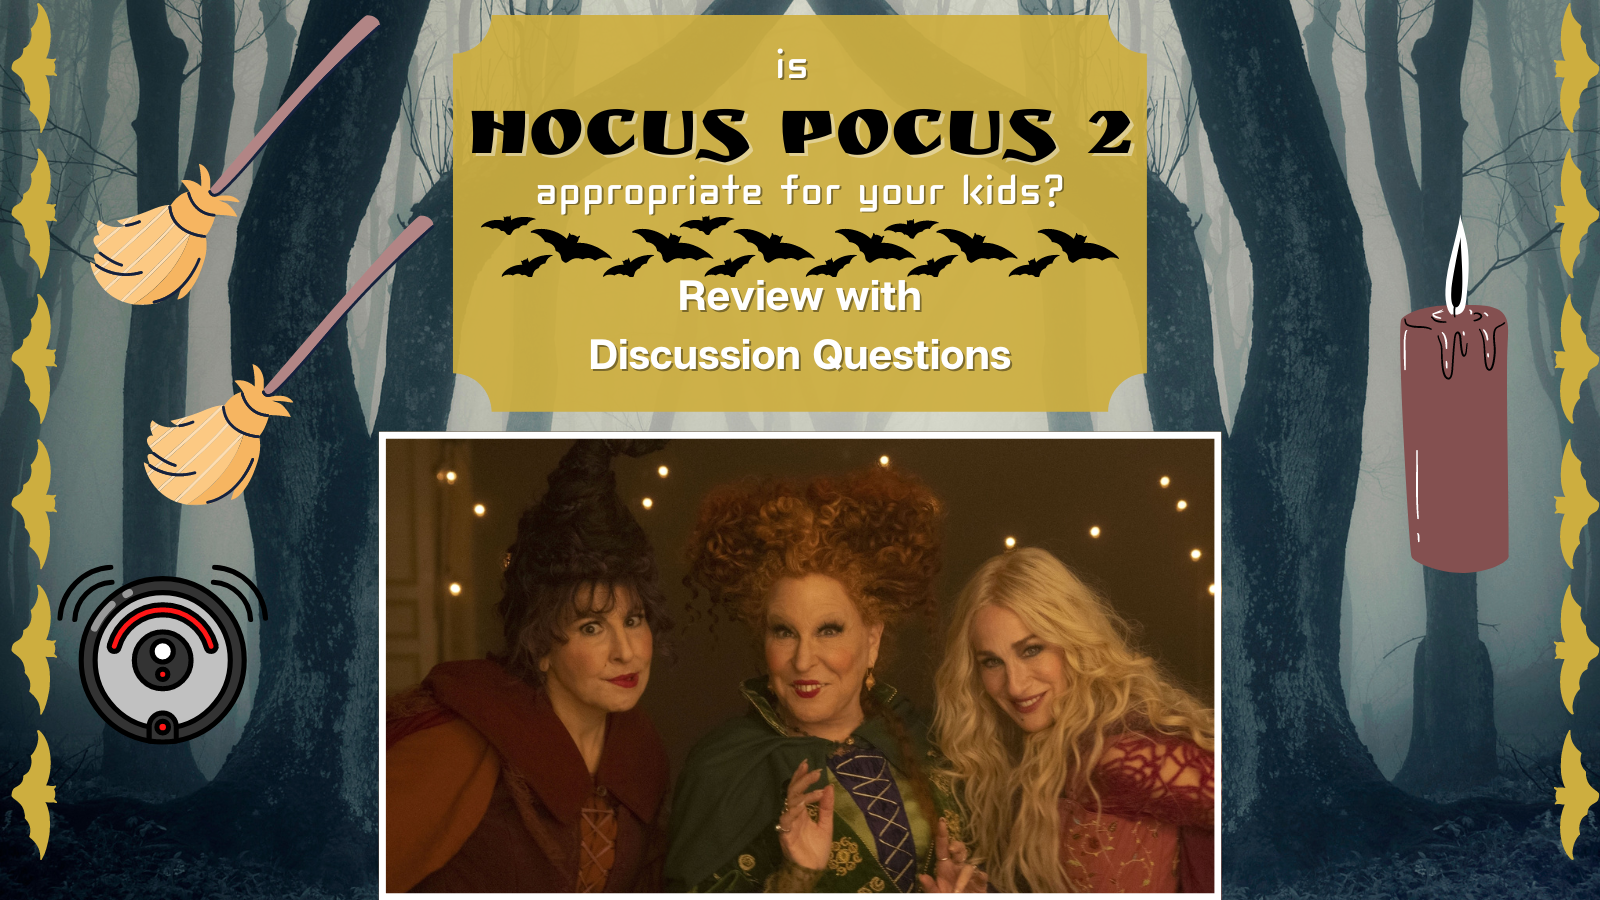 IS Hocus Pocus 2 Appropriate?